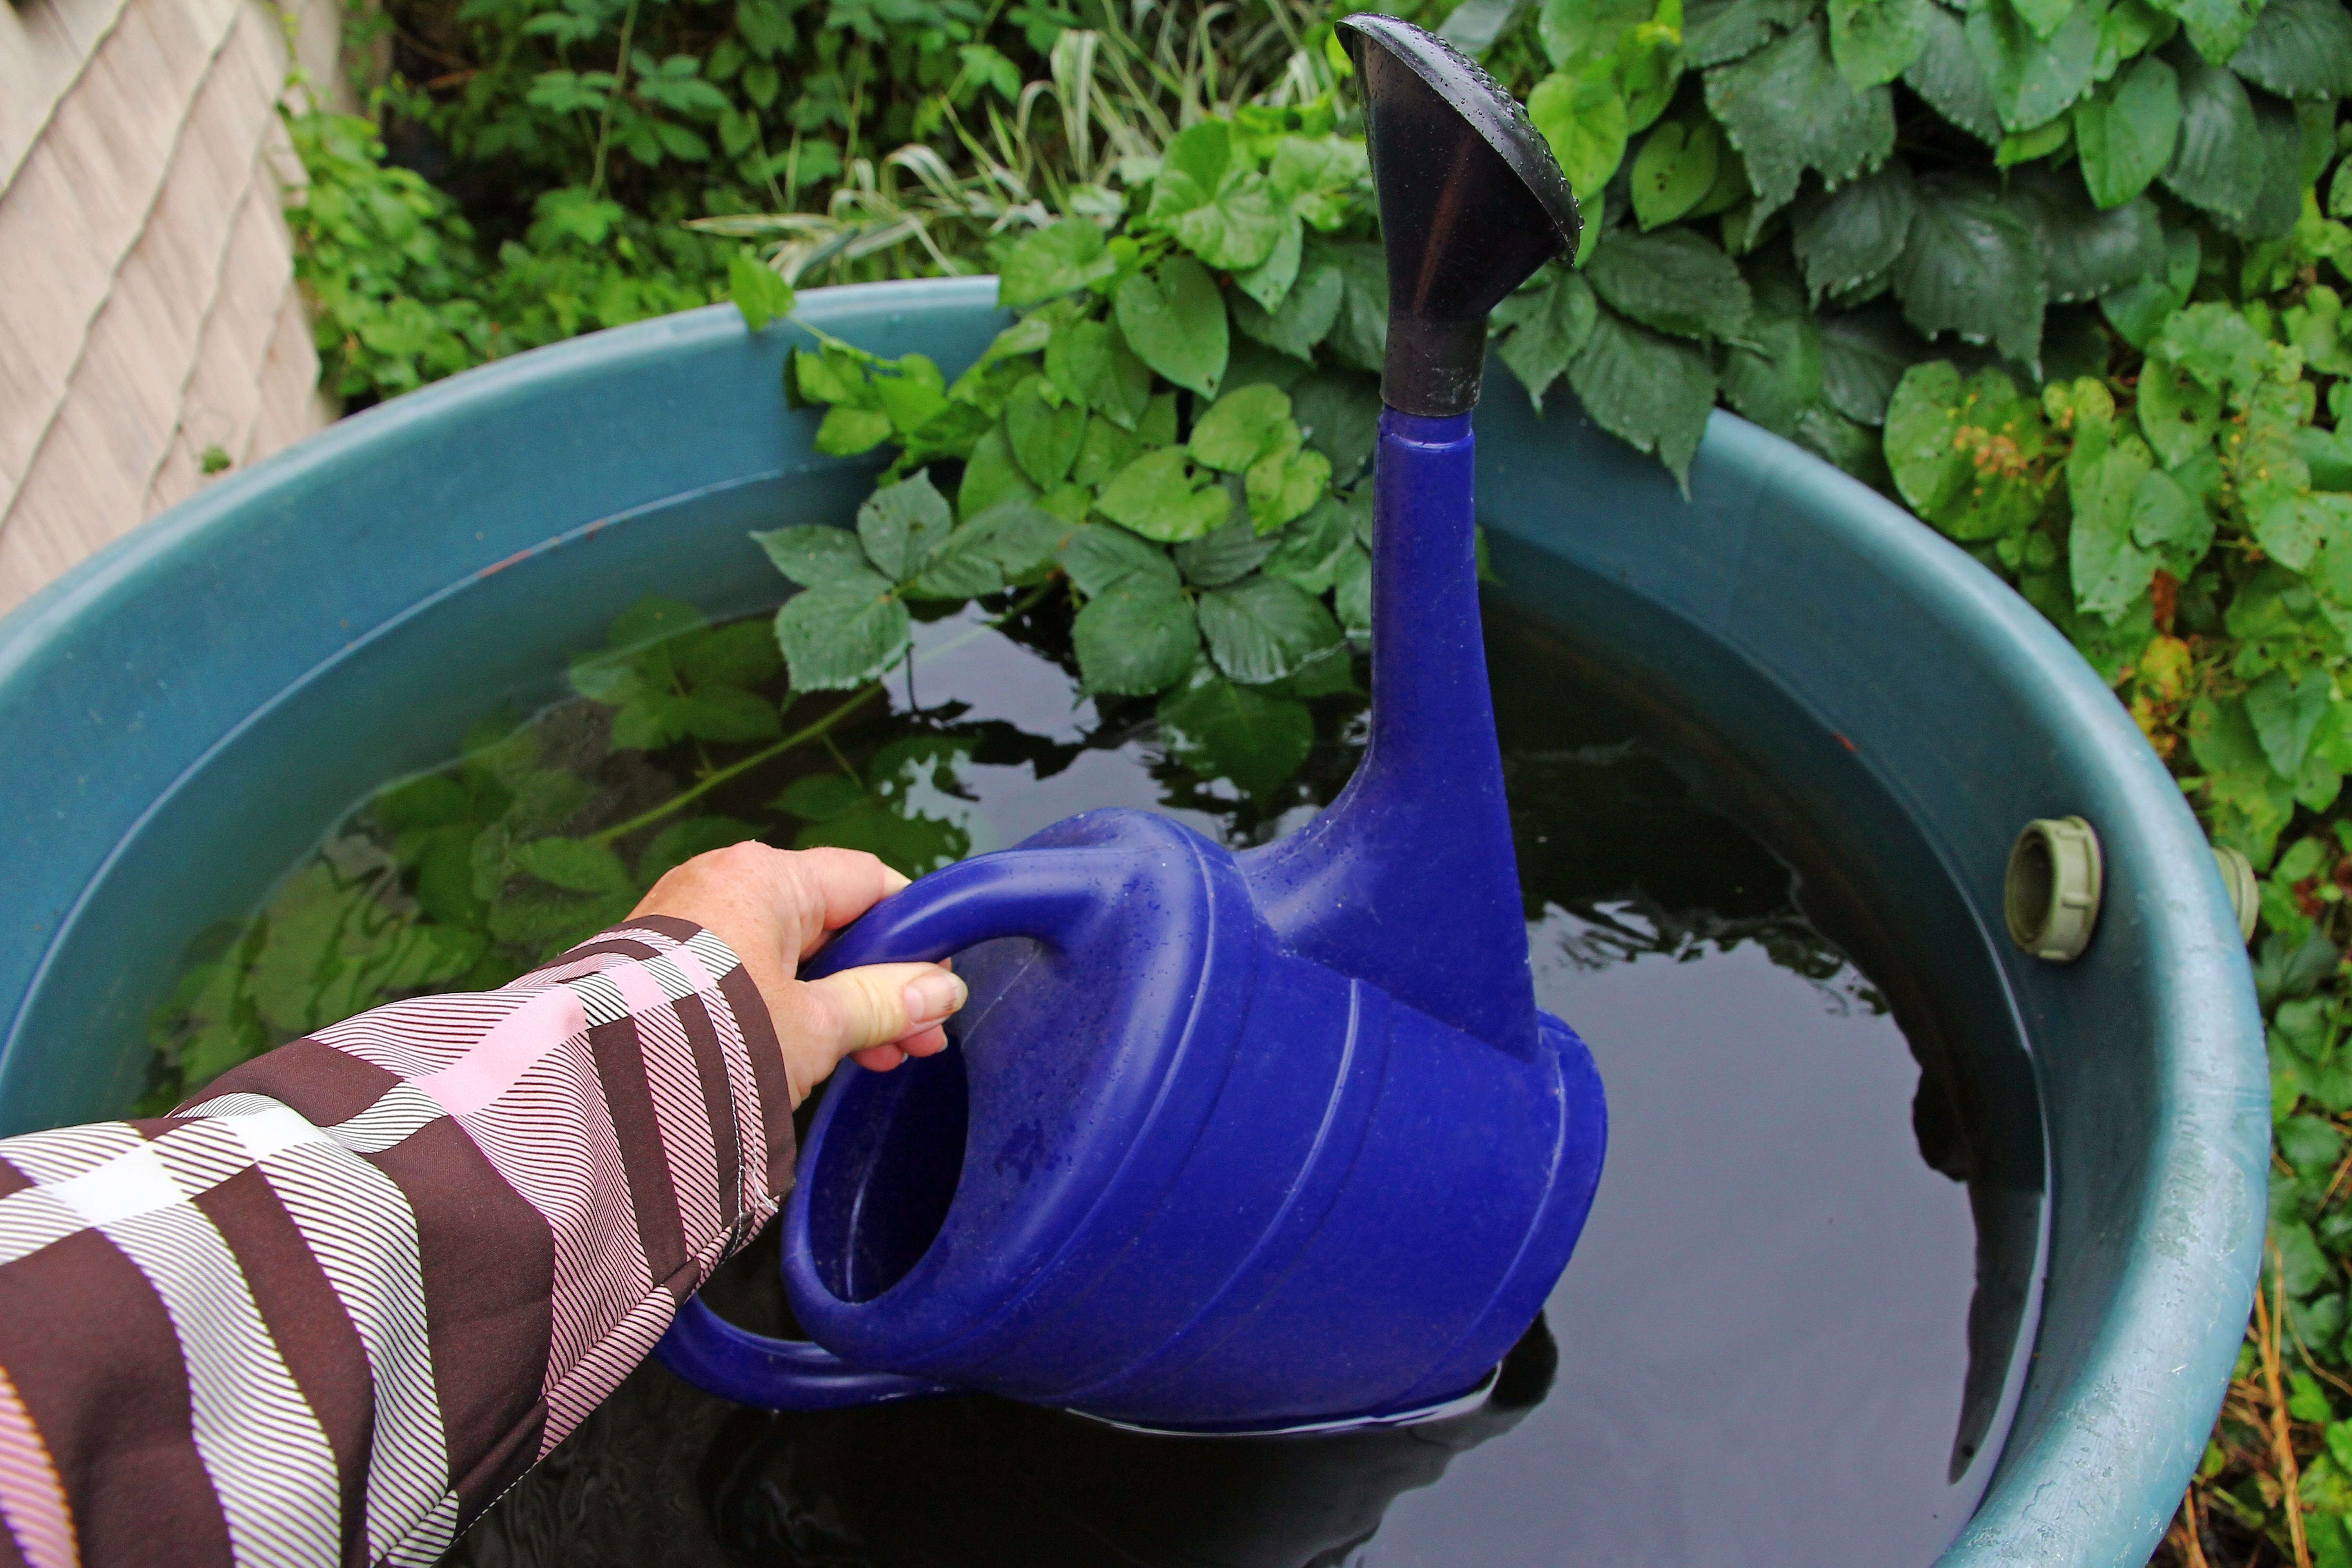 Récupérer les eaux de pluie est bénéfique pour la planète et pour vos dépenses ! Copyright (c) 2023 ShU studio/Shutterstock.